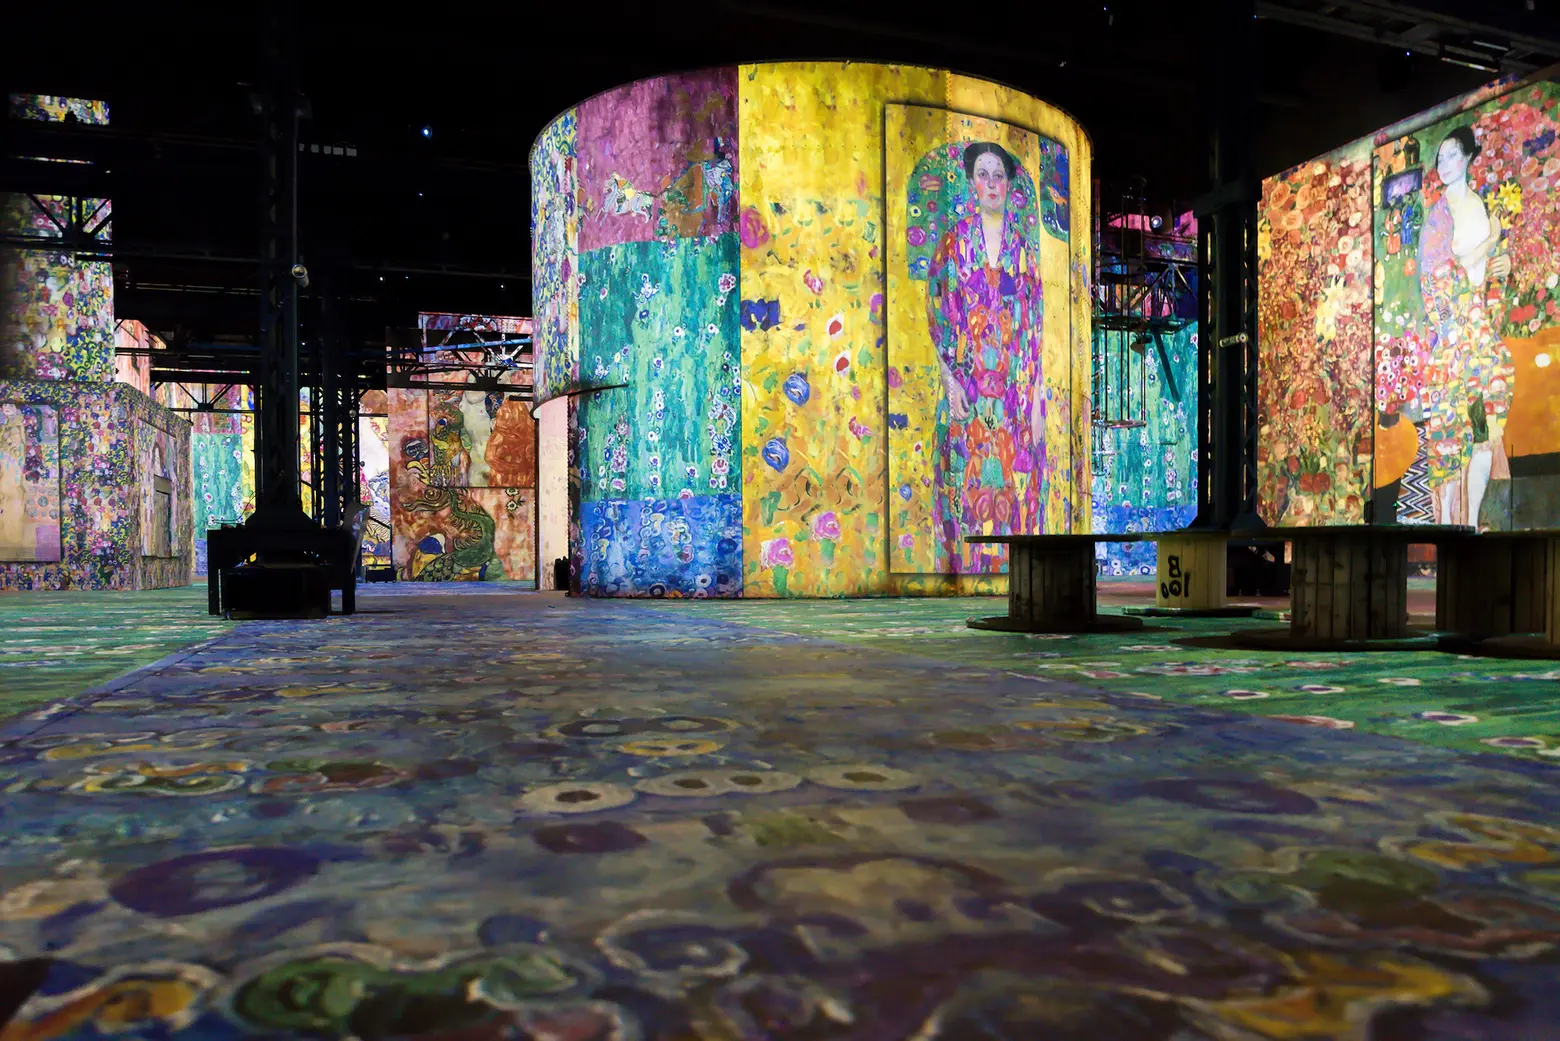 A permanent immersive art center will open inside a Lower Manhattan landmark this summer